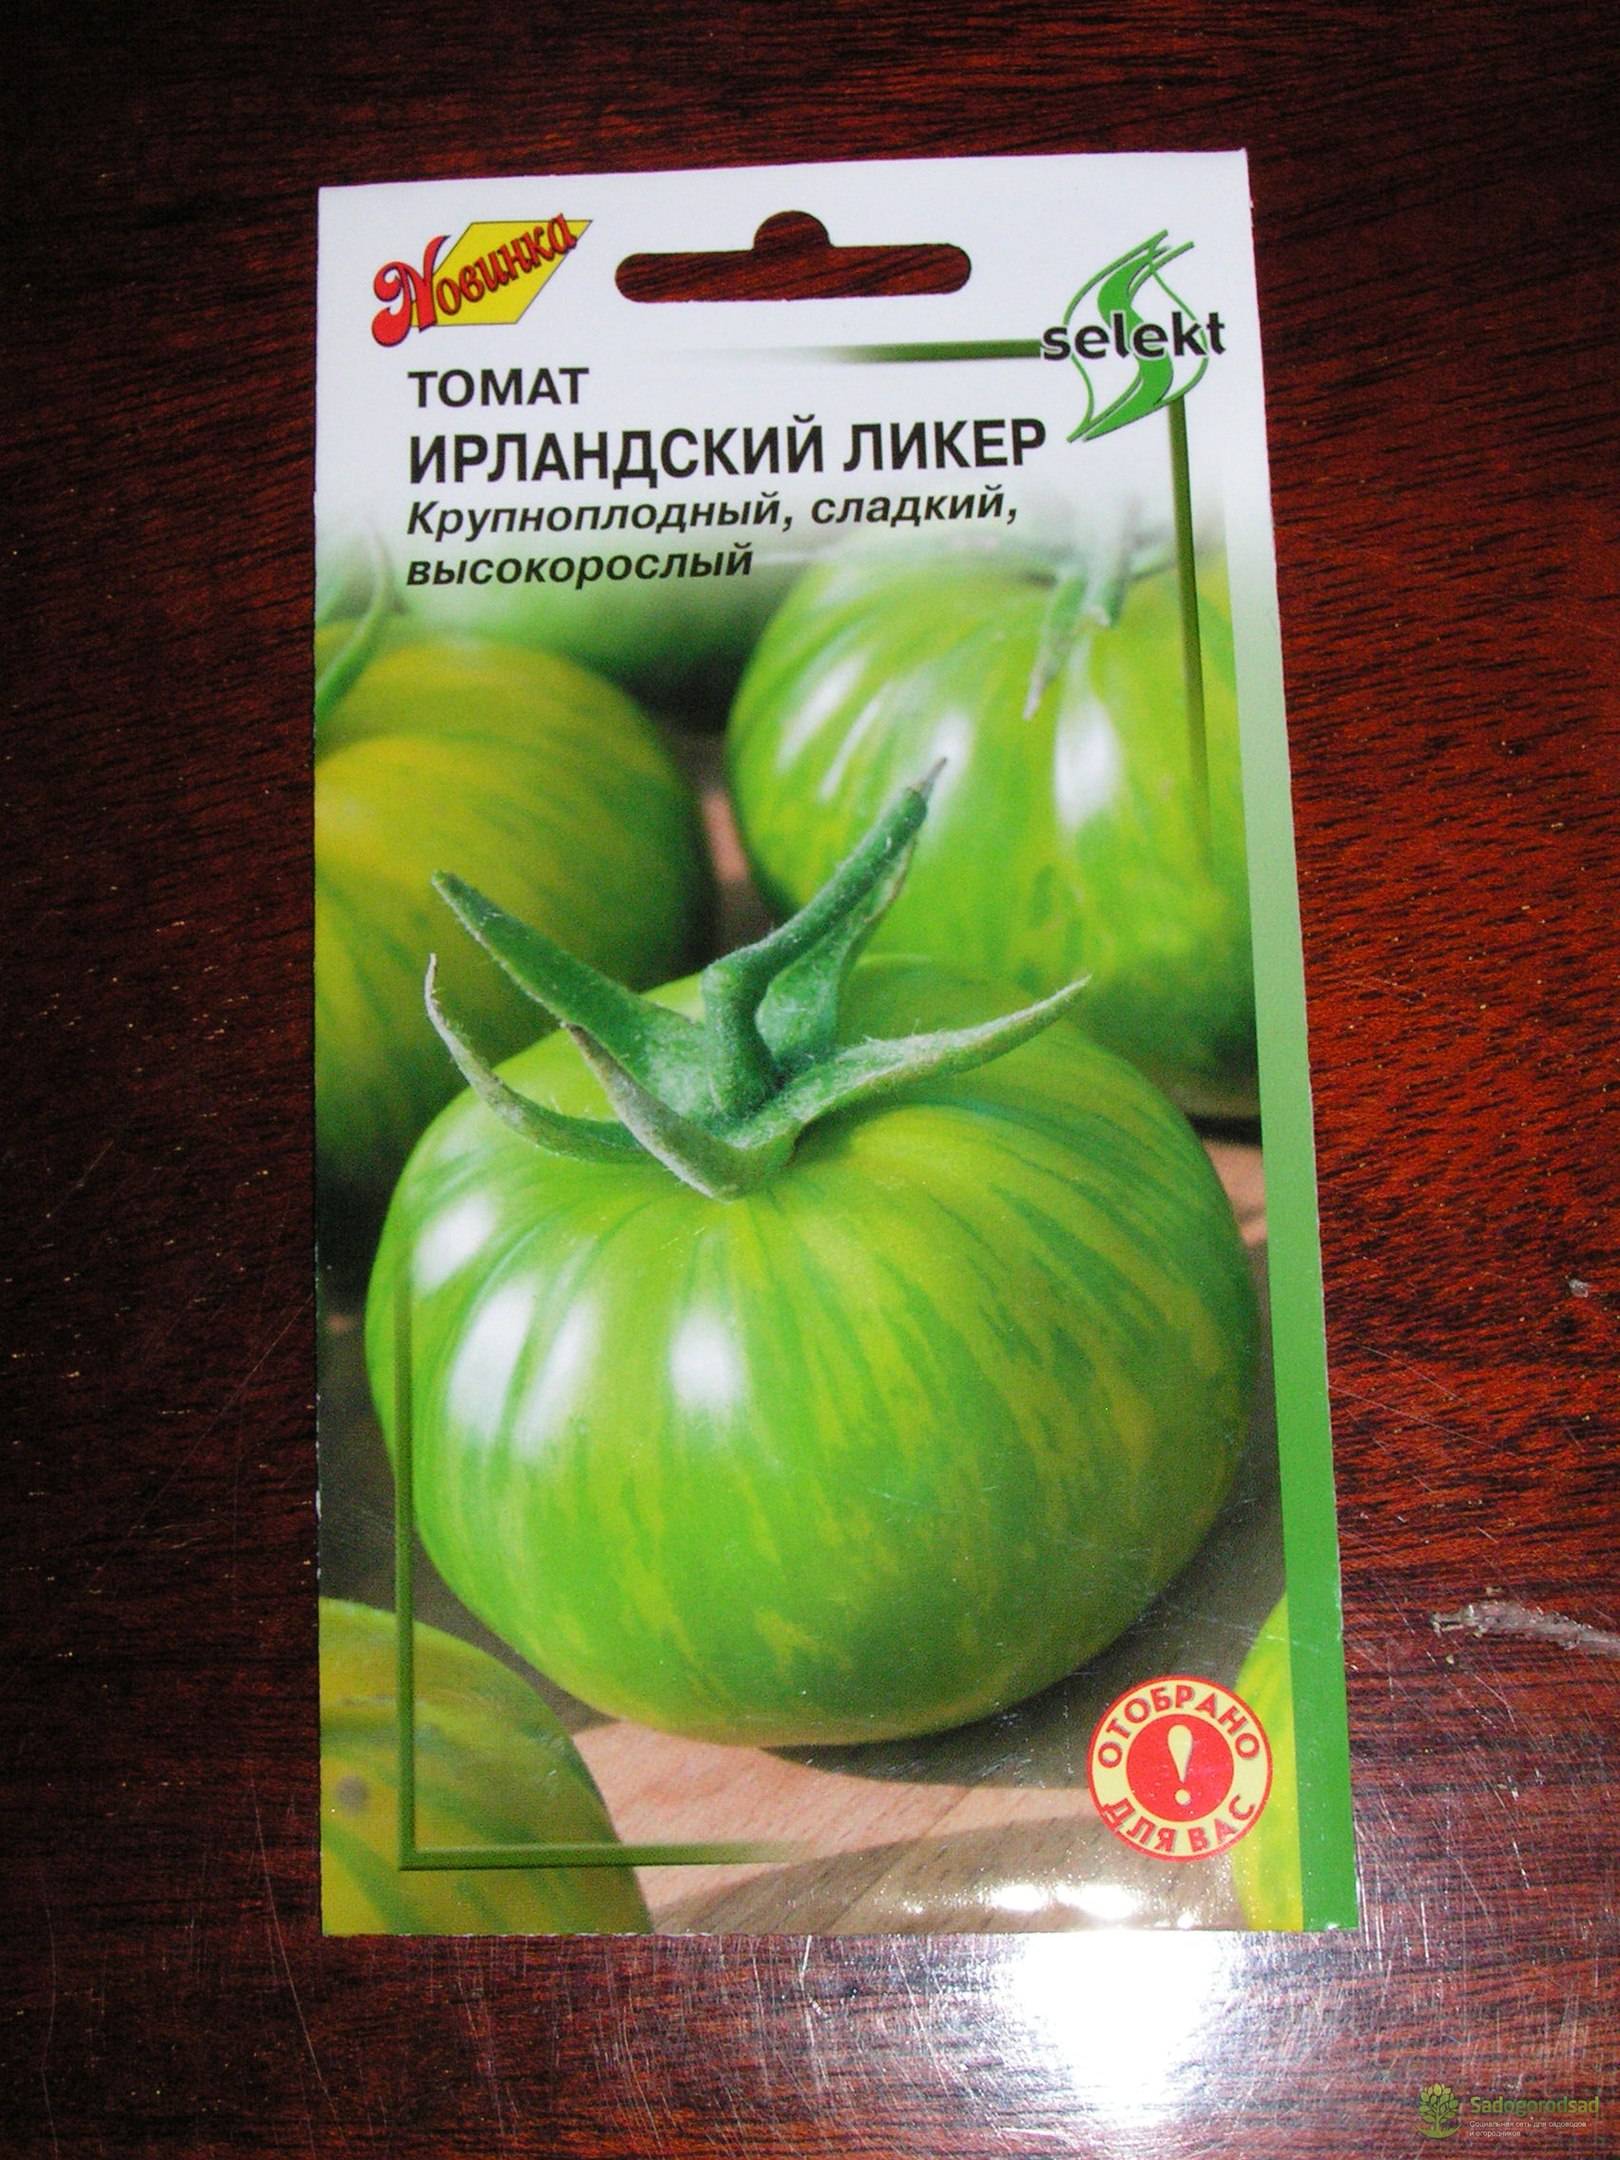 Томат ирландский ликер: характеристика и описание сорта, отзывы тех кто сажал помидоры об их урожайности, фото семян